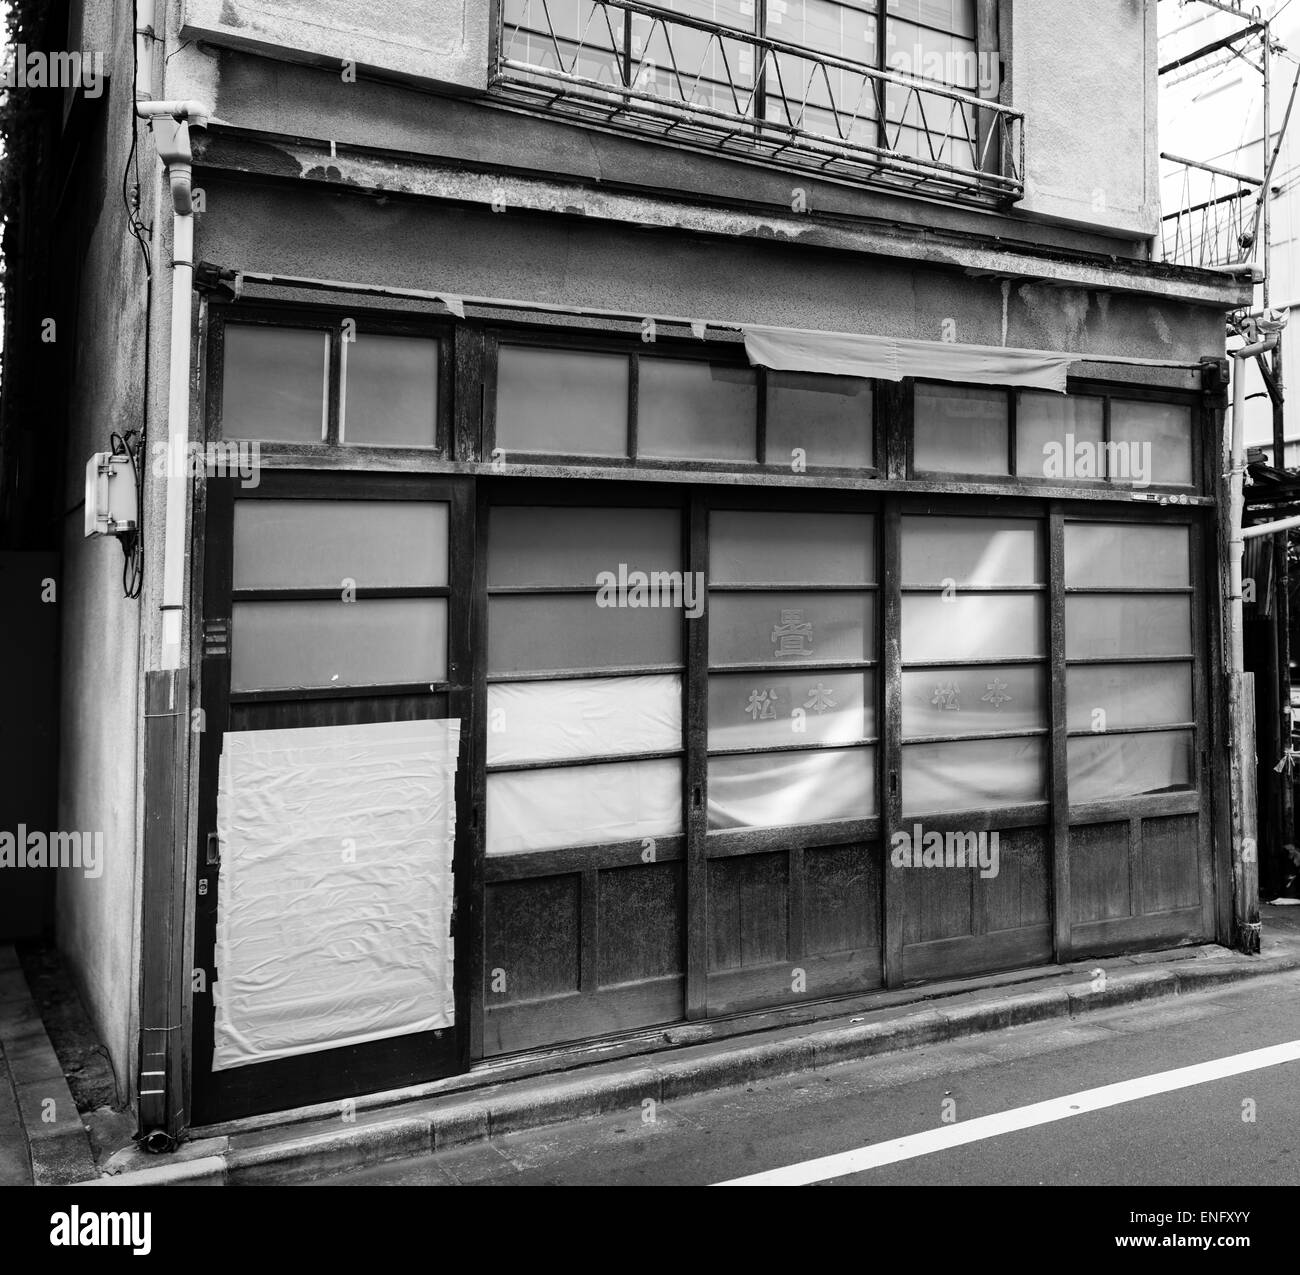 Boutique Tatami à Yotsuya, Tokyo, Japon fermé pour un jour férié. La porte a été réparée avec une bande de canard Banque D'Images